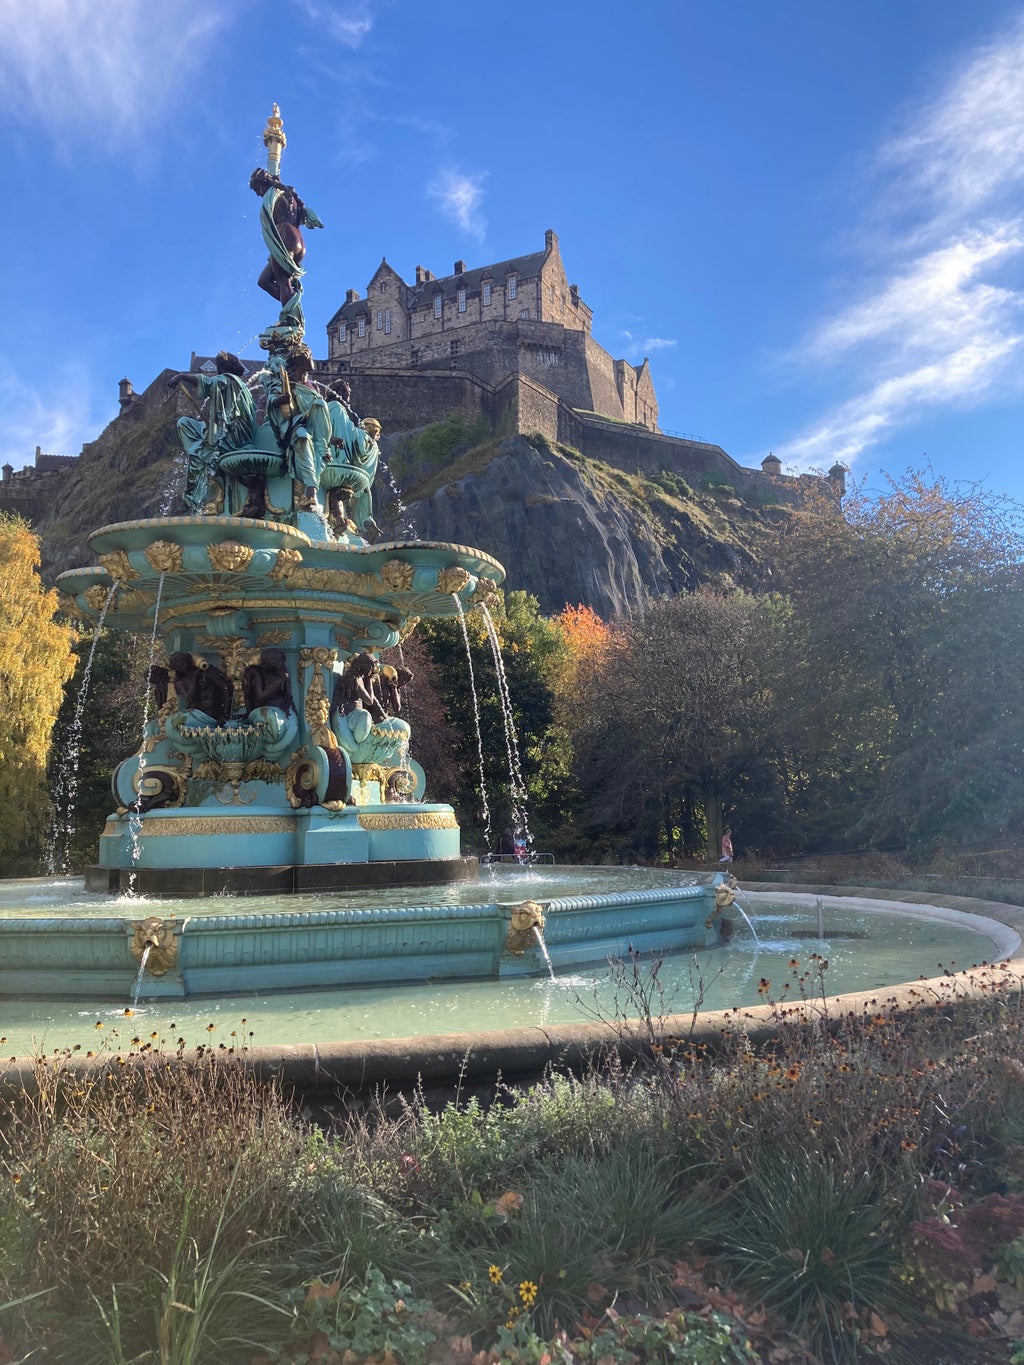 Edinburgh Castle and Fountain